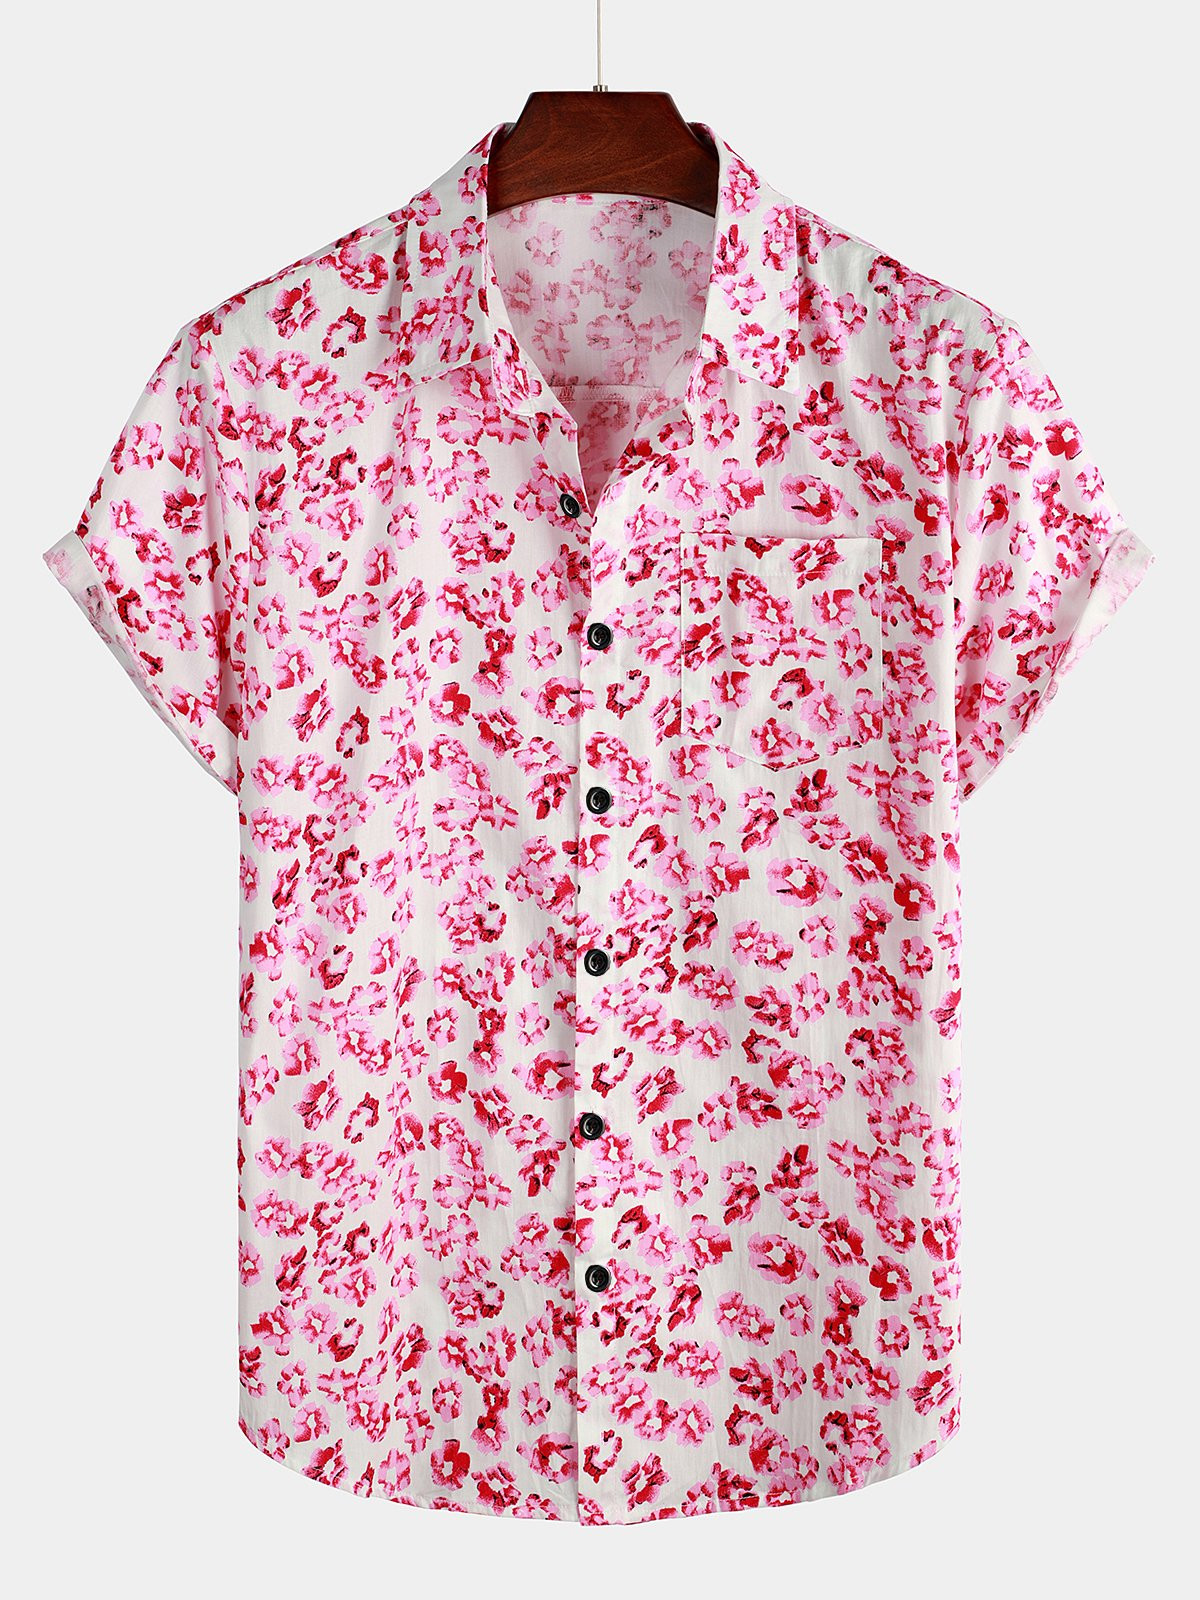 Mens Floral Printed Holiday Pocket Cotton Shirt Hawaiian Shirt for Men Women